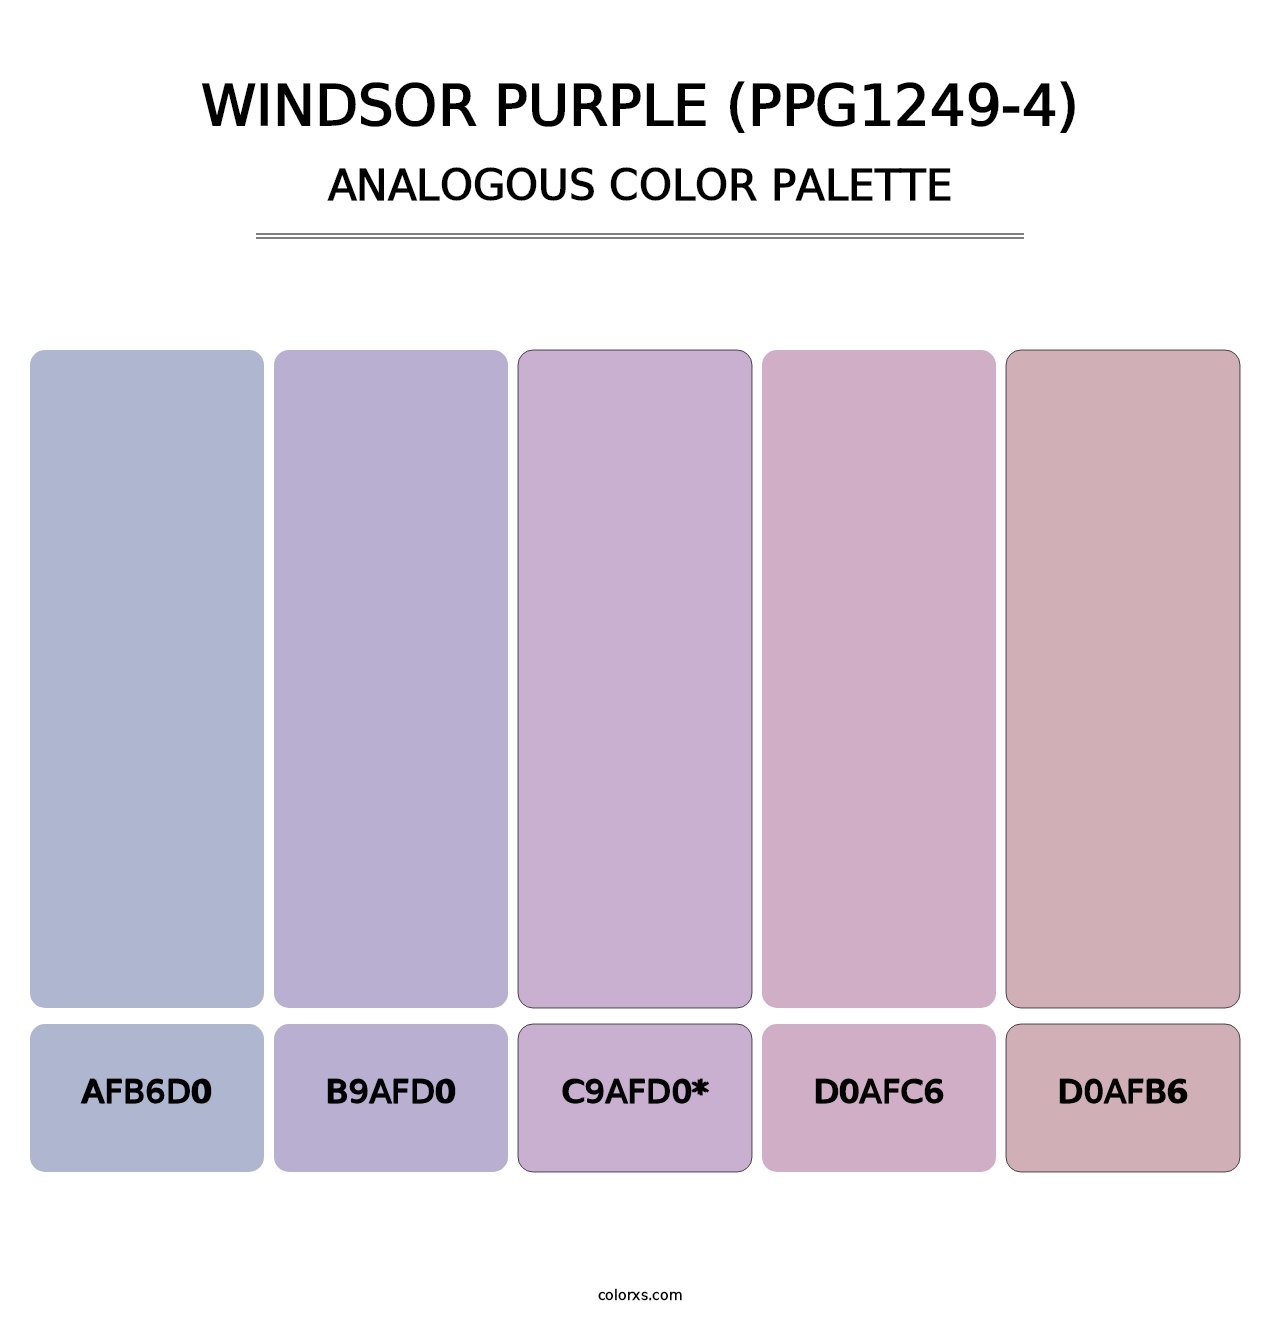 Windsor Purple (PPG1249-4) - Analogous Color Palette